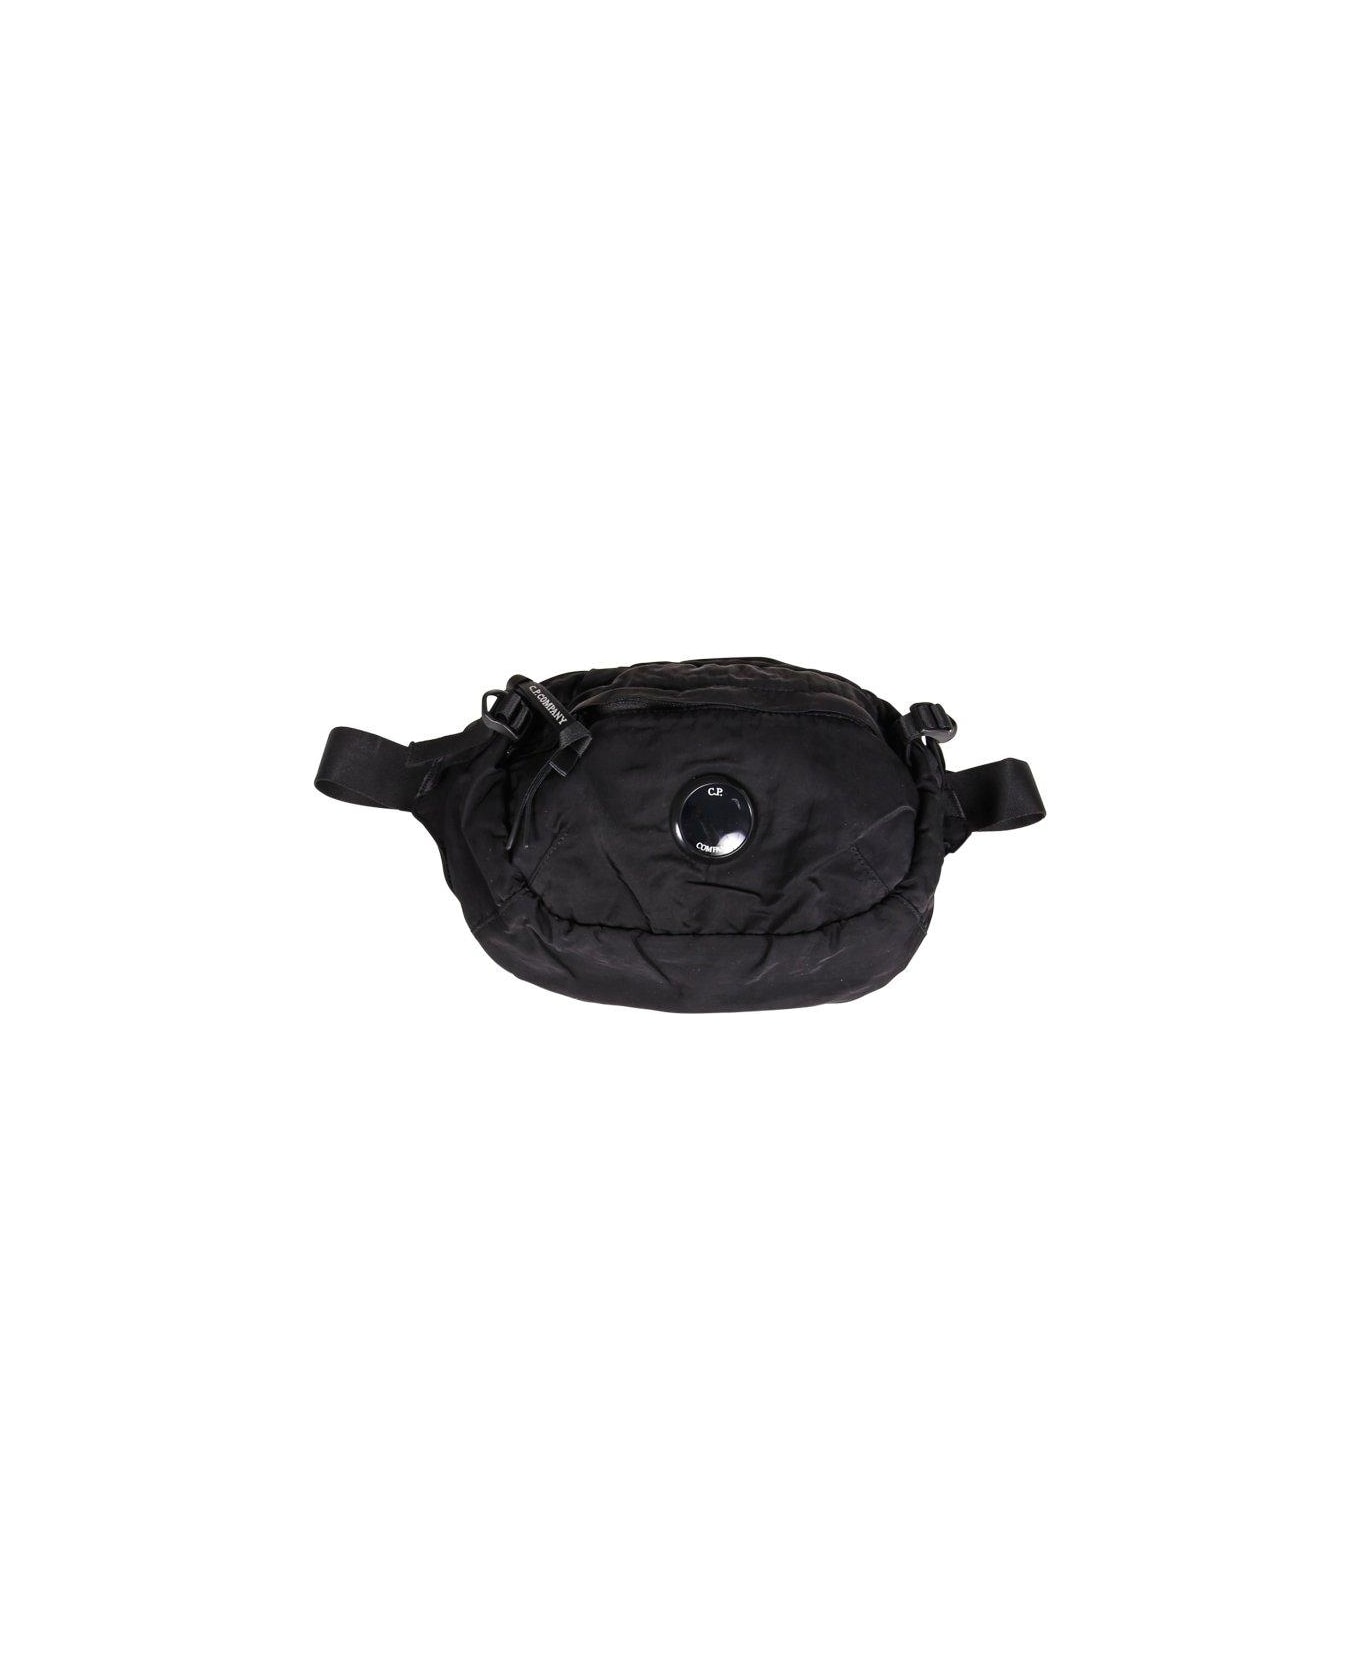 C.P. Company Lens-detailed Crossbody Bag - Black